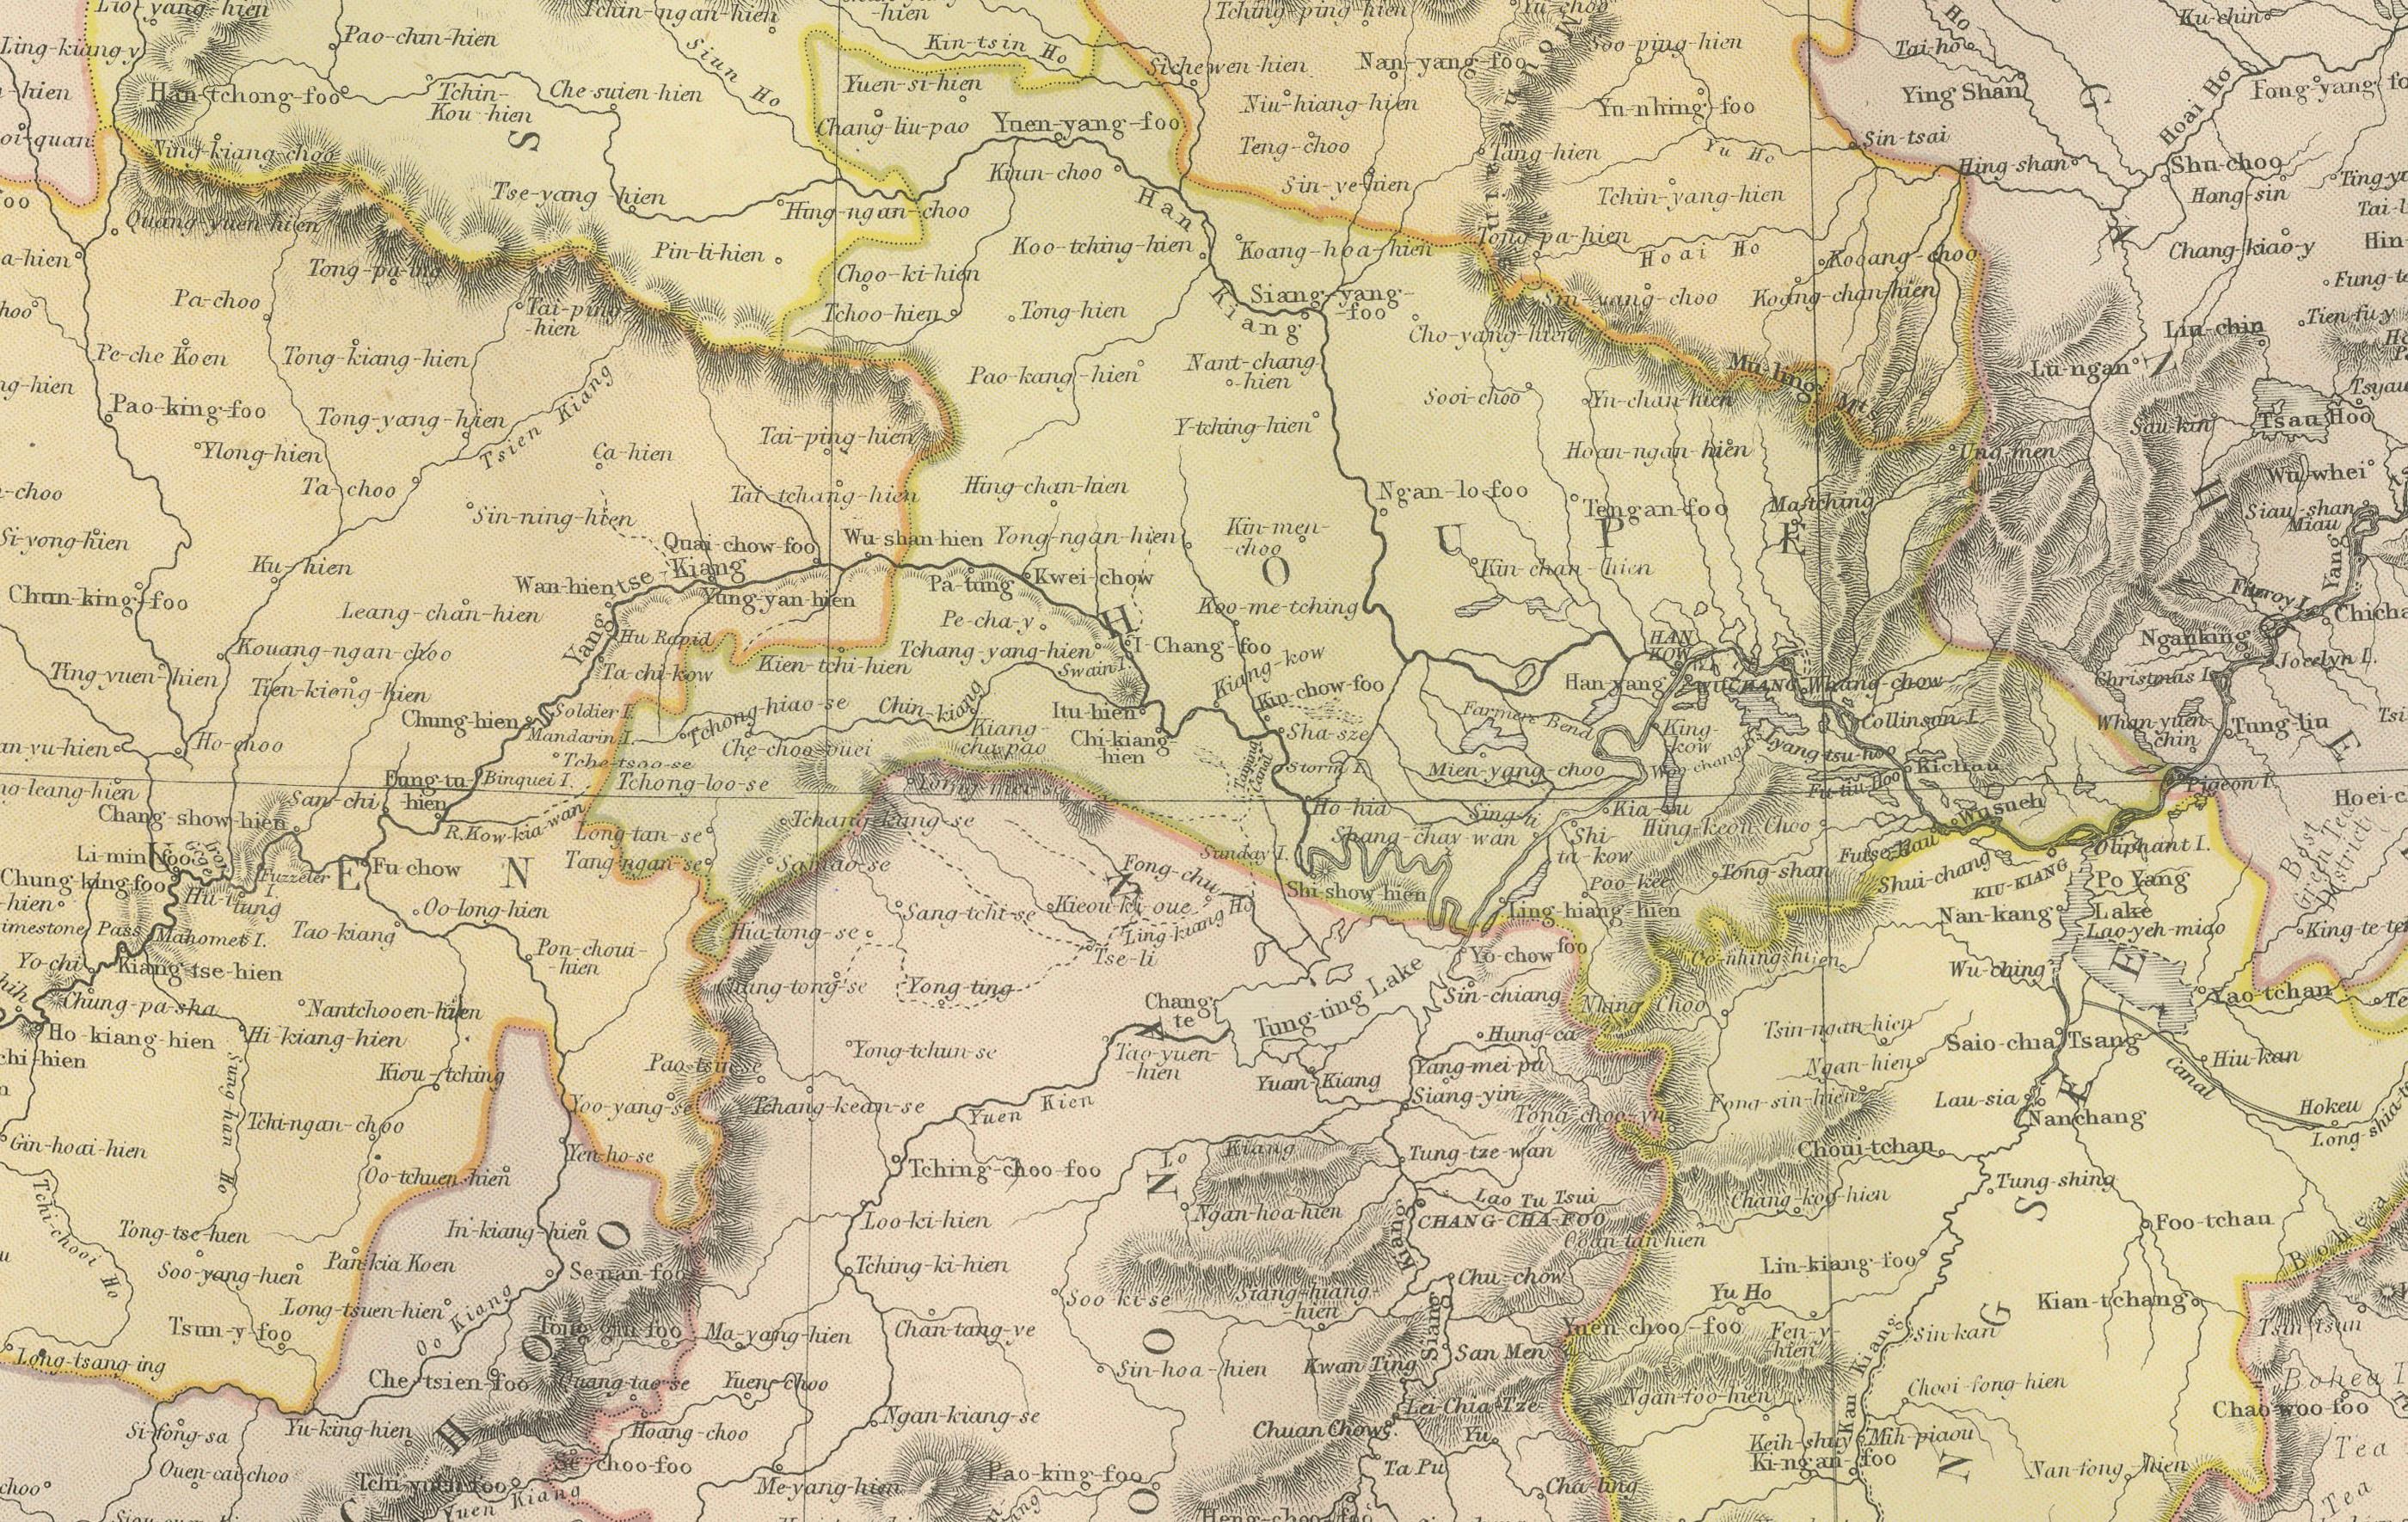 Cette carte est une carte de la Chine réalisée par Blackie & Son en 1882. Le titre 